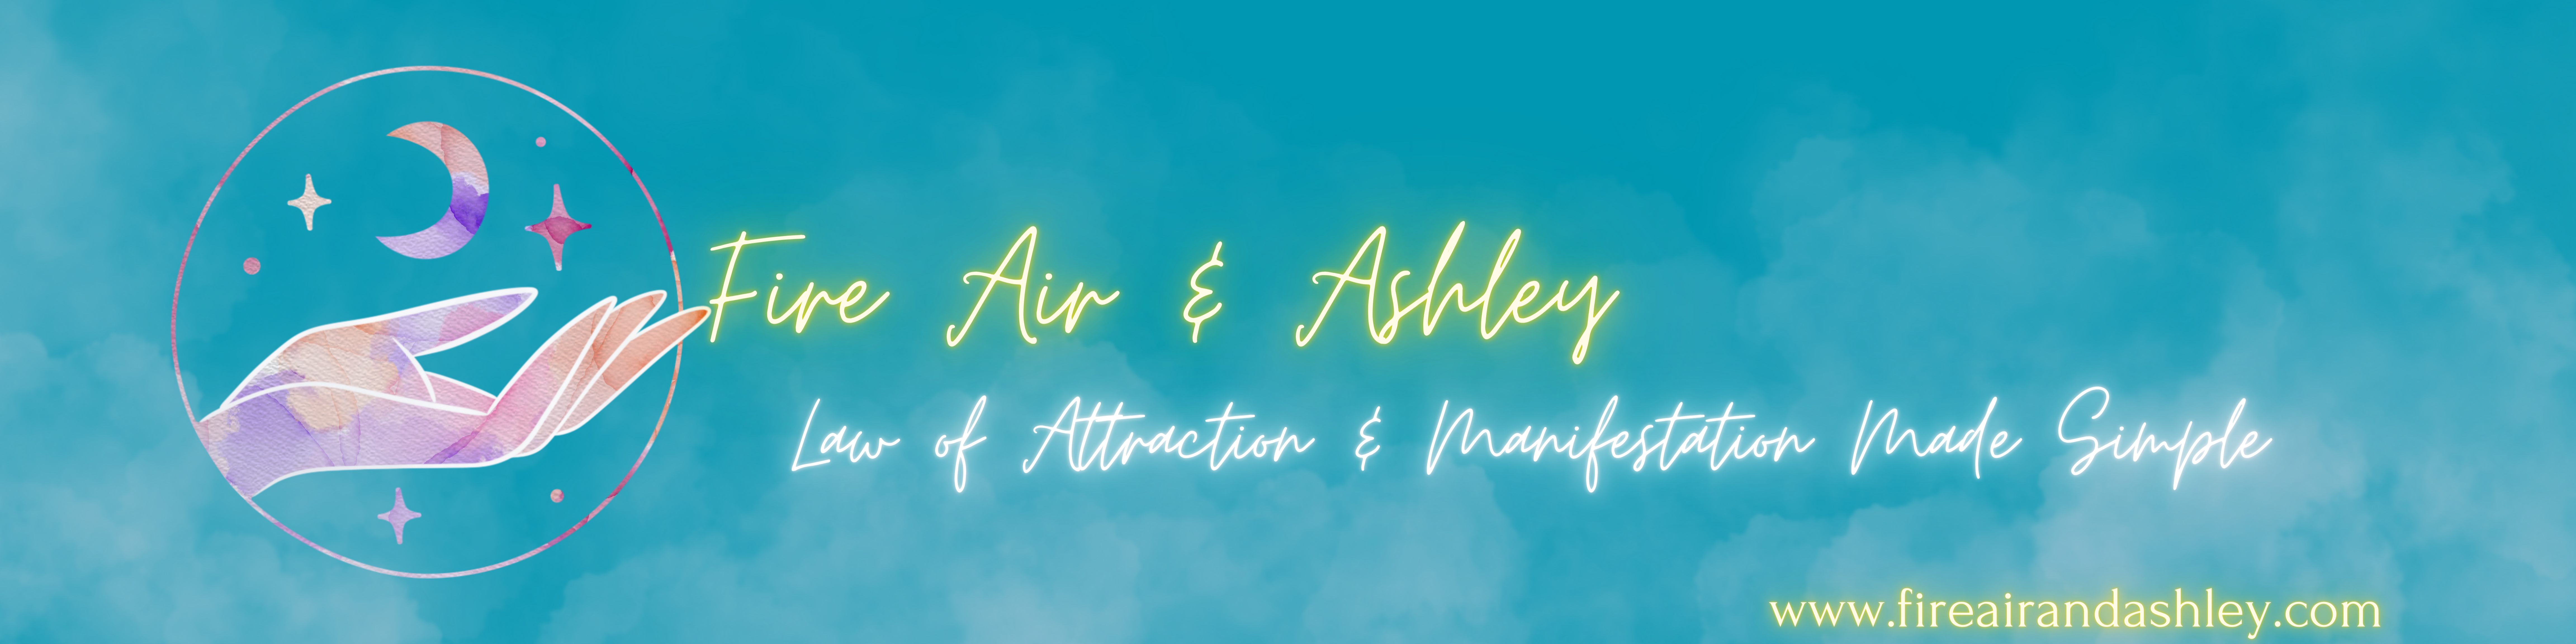 Fire Air & Ashley